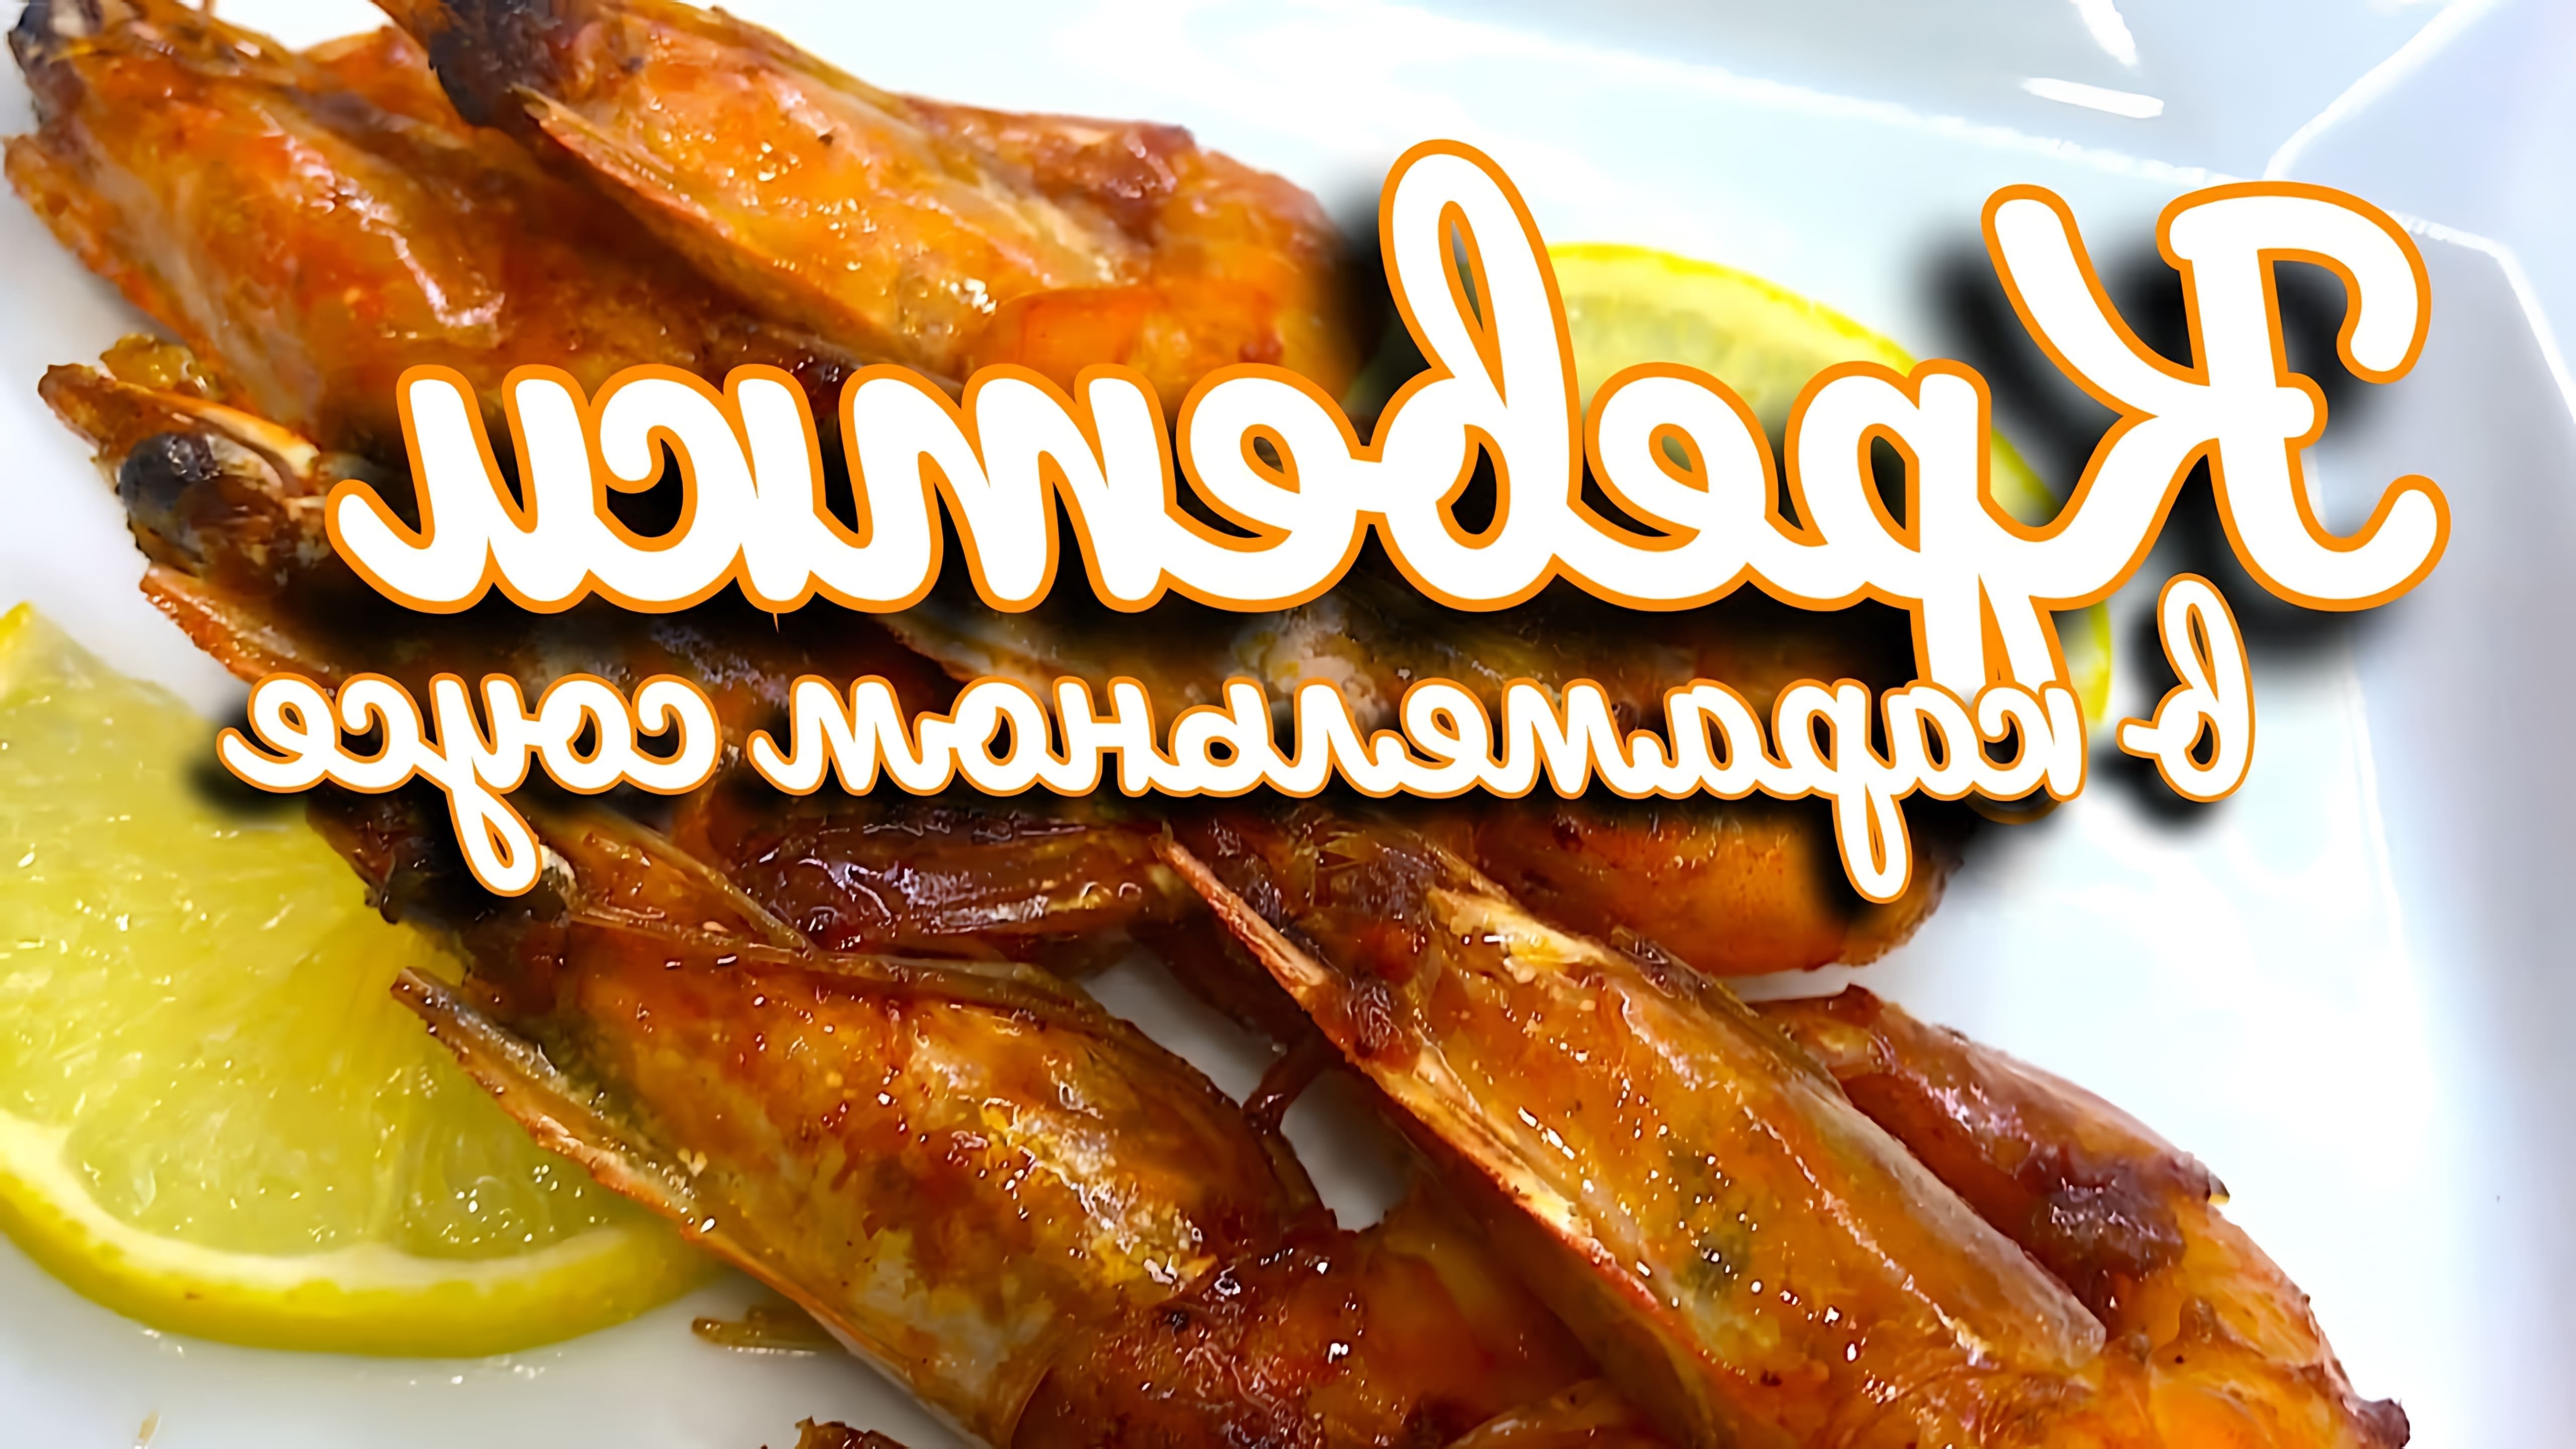 В этом видео демонстрируется рецепт приготовления королевских креветок в карамельном соусе